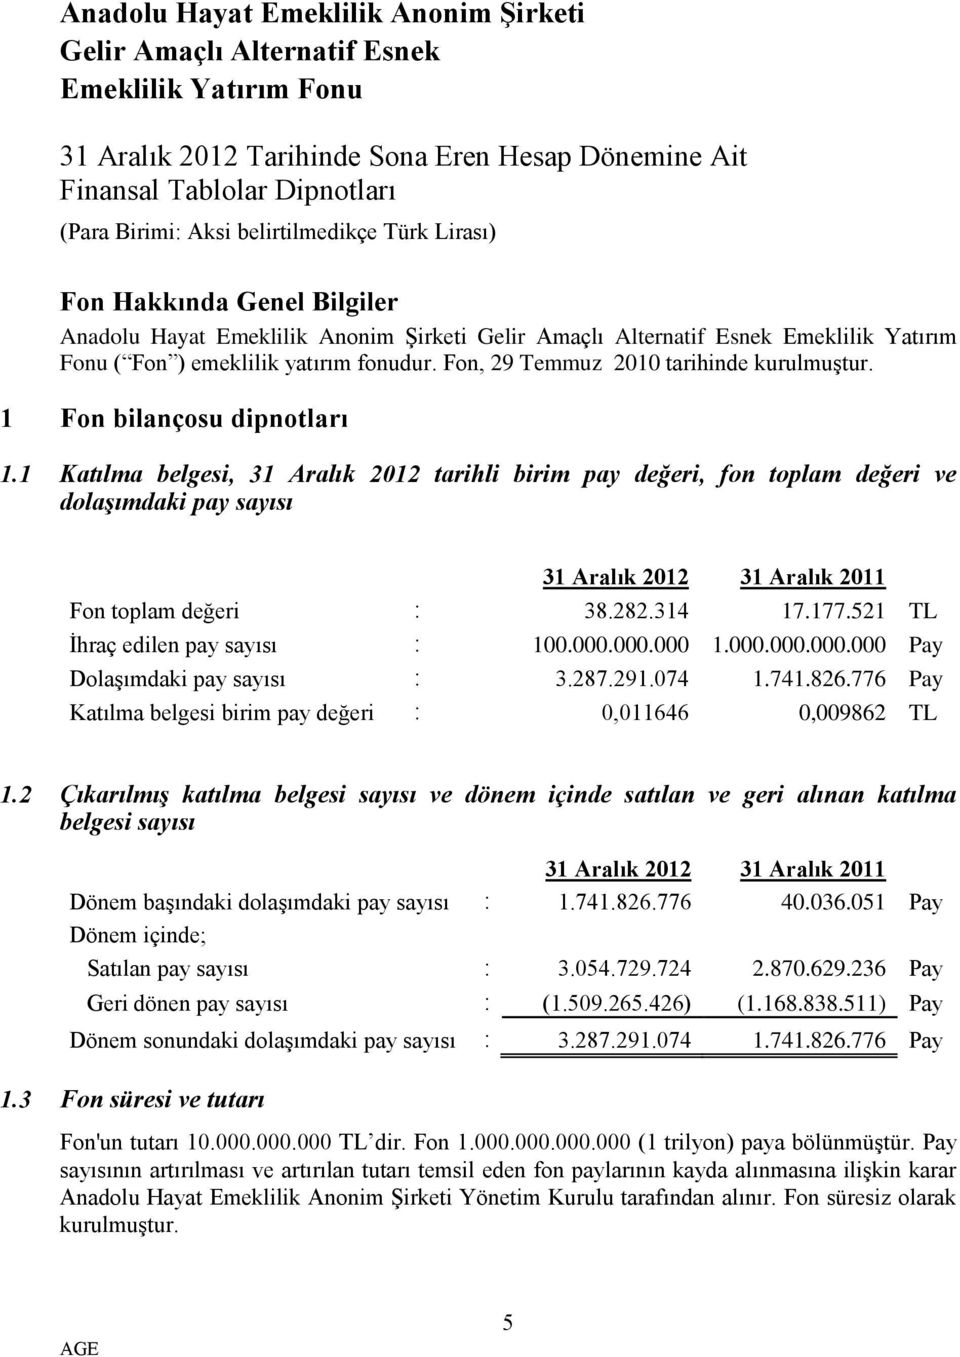 1 Katılma belgesi, 31 Aralık 2012 tarihli birim pay değeri, fon toplam değeri ve dolaşımdaki pay sayısı 31 Aralık 2012 31 Aralık 2011 Fon toplam değeri : 38.282.314 17.177.